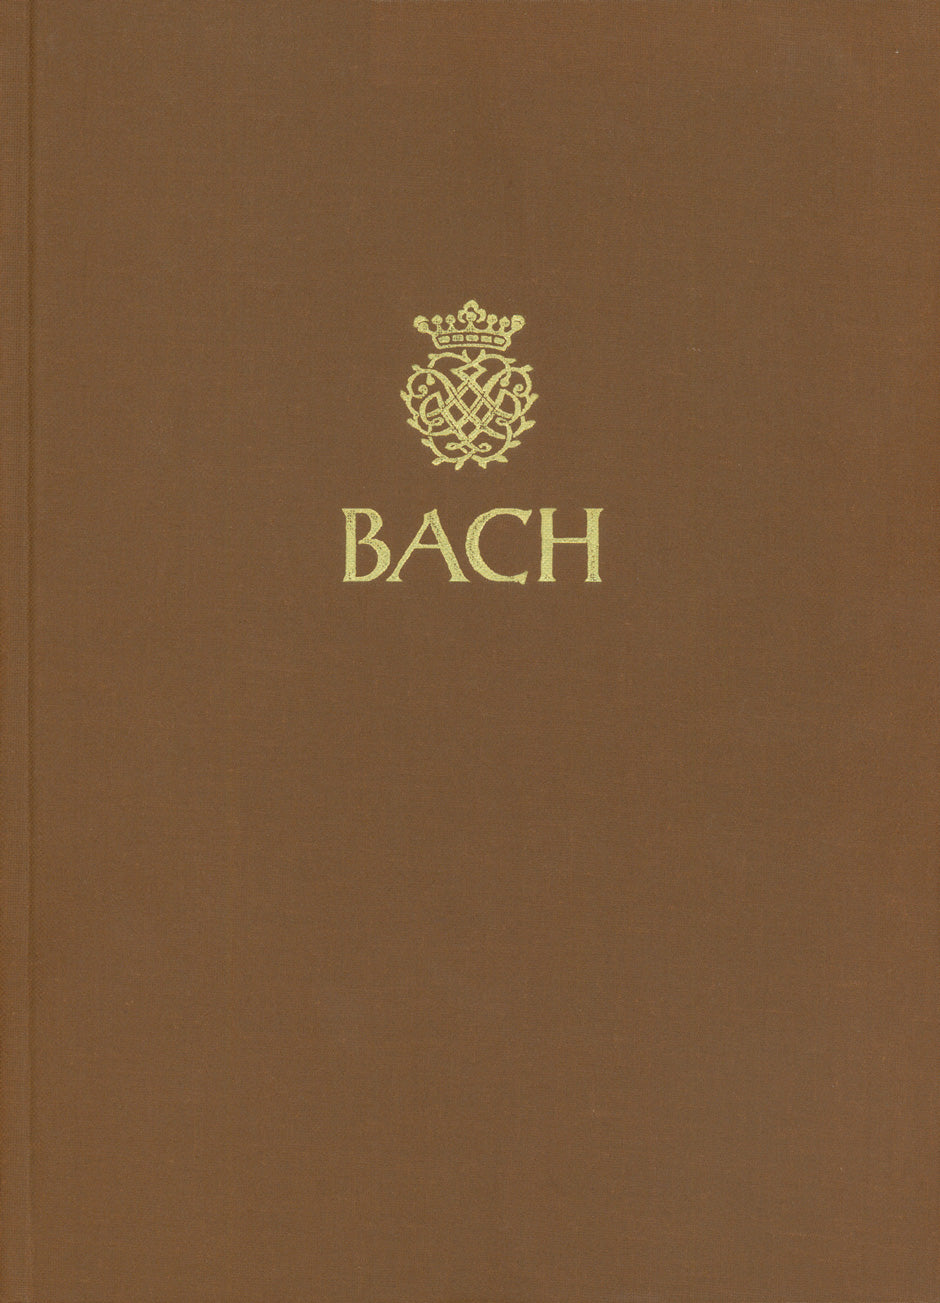 Freie Orgelwerke und Choralpartiten aus unterschiedlicher Überlieferung -study score mit Berichten über ehemals Johann Sebastian Bach zuGeschriebene Werke-